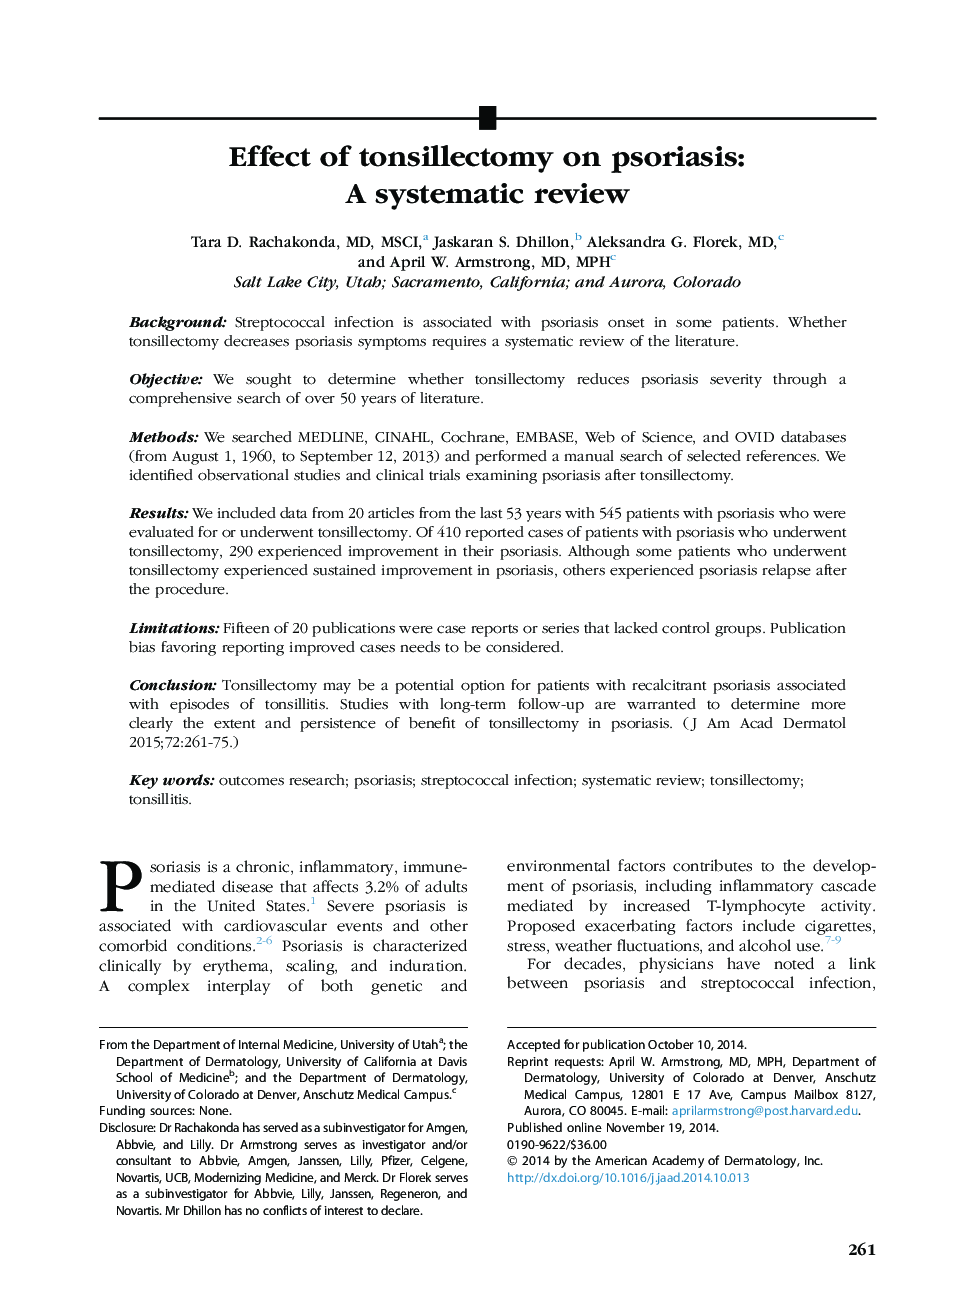 اثر تنسیلکتومی در پسوریازیس: بررسی سیستماتیک 